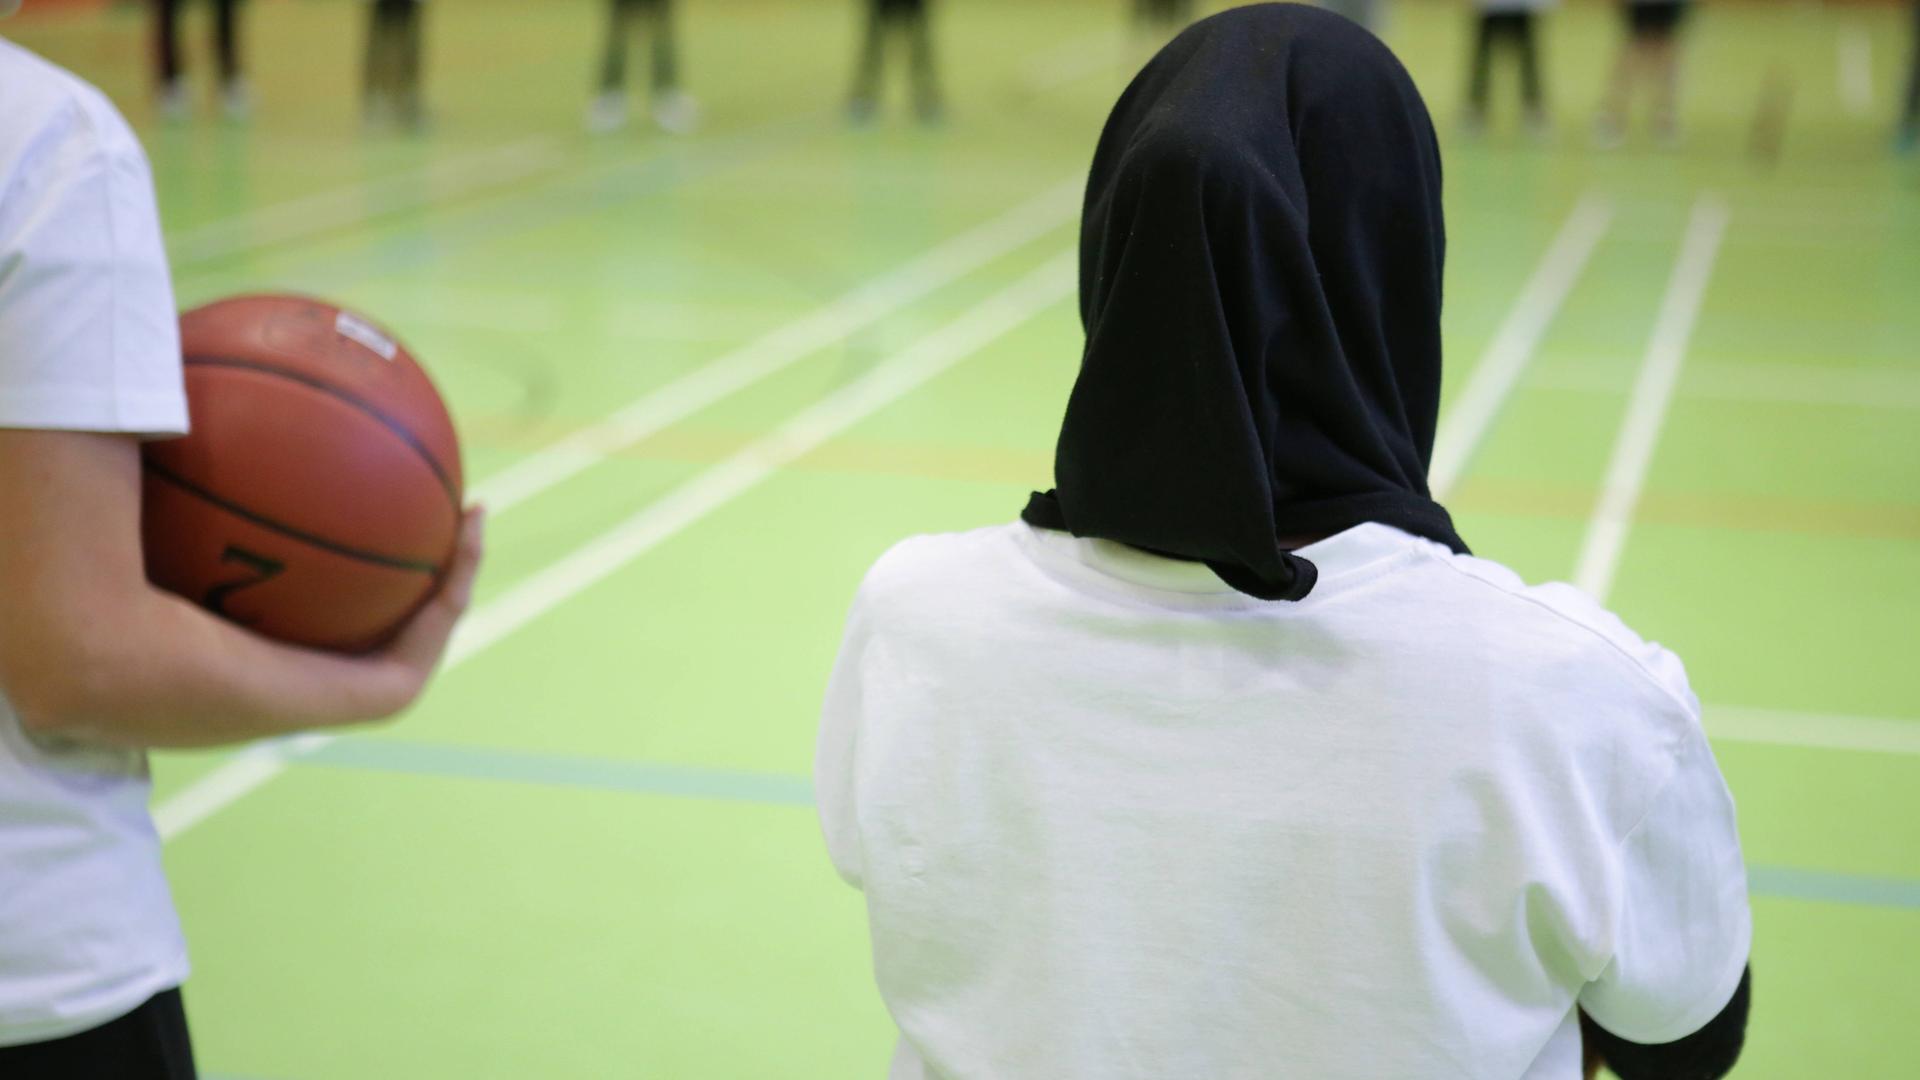 Ein Mädchen mit Kopftuch beim Basketball-Training.